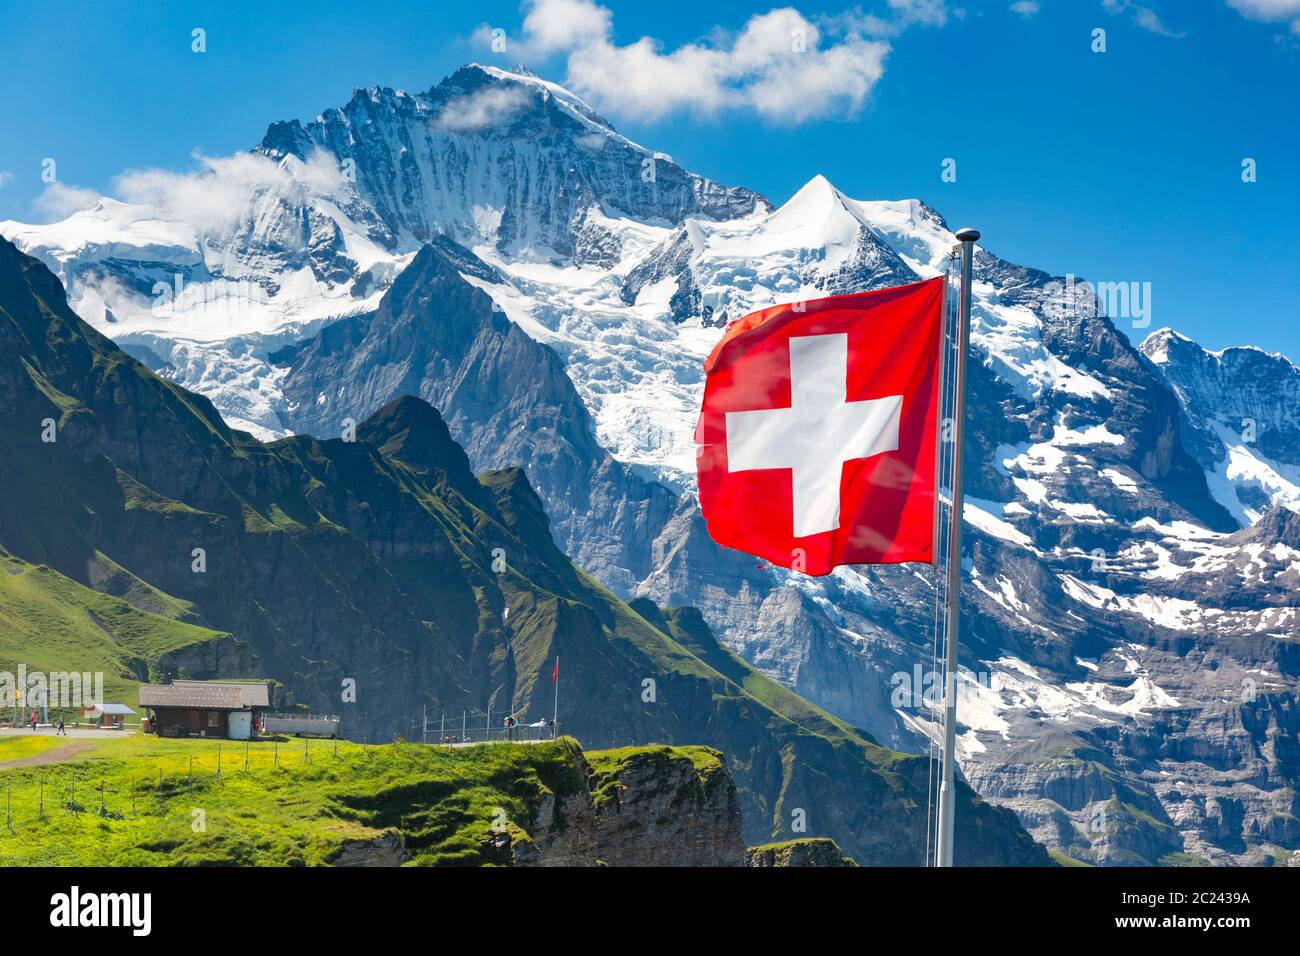 Drapeau suisse un wavingon avec vue Mont Männlichen pic de montagne Jungfrau sur l'arrière-plan, dans l'Oberland bernois Suisse Banque D'Images